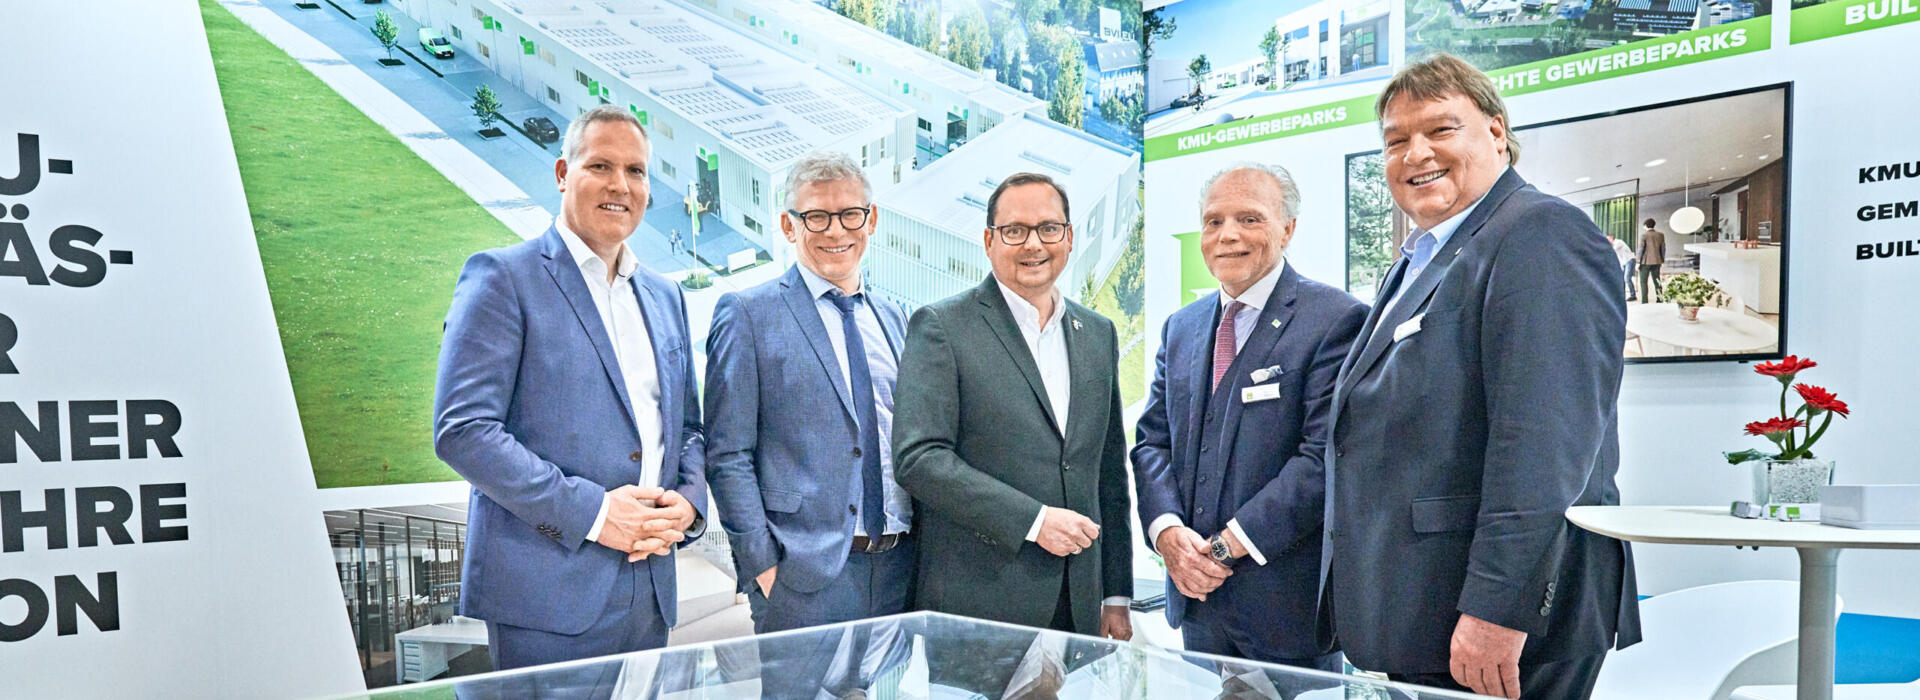 Pressemitteilung: Nach dem Erfolg des „Green Business Parks Carnaperhof“ in Essen geht BVI.EU weiter auf Expansionskurs in Deutschland